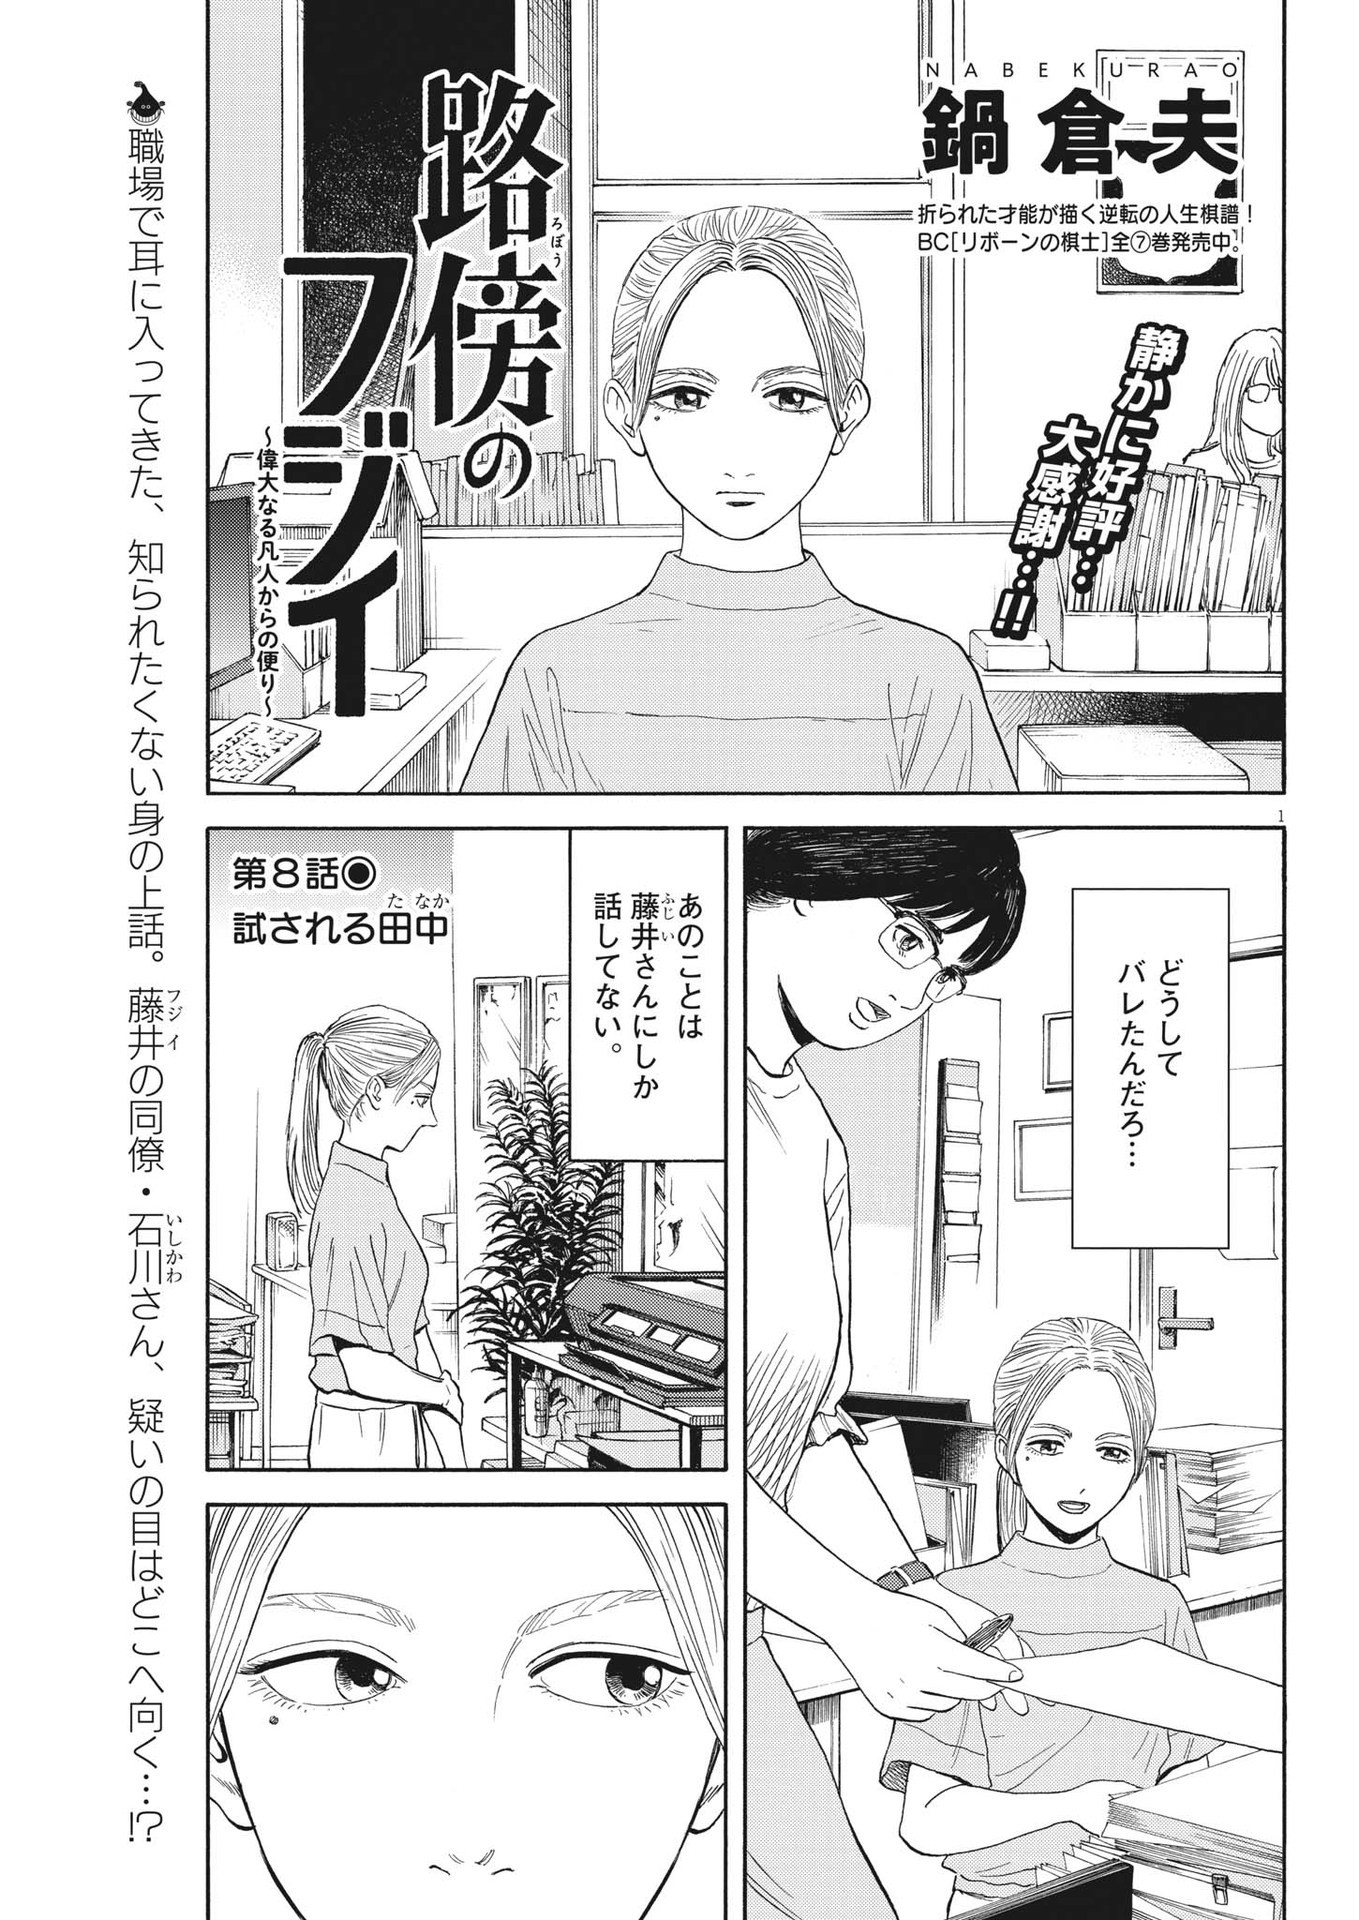 Robou no Fujii – Idai Naru Bonjin kara no Tayori - Chapter 8 - Page 1